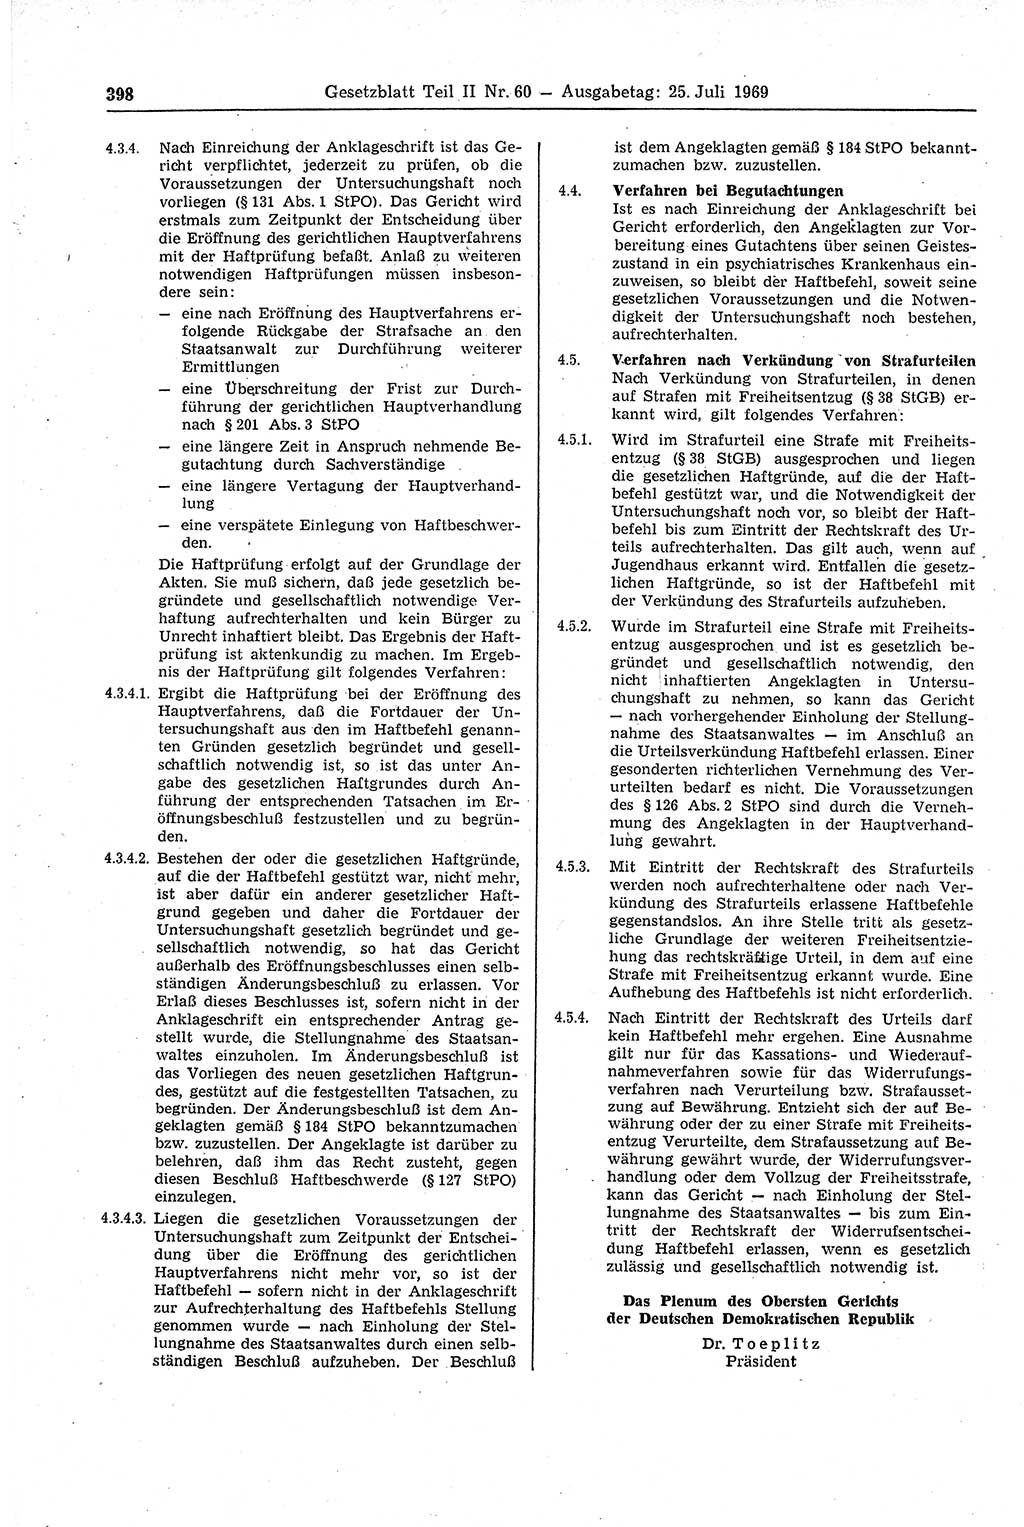 Gesetzblatt (GBl.) der Deutschen Demokratischen Republik (DDR) Teil ⅠⅠ 1969, Seite 398 (GBl. DDR ⅠⅠ 1969, S. 398)